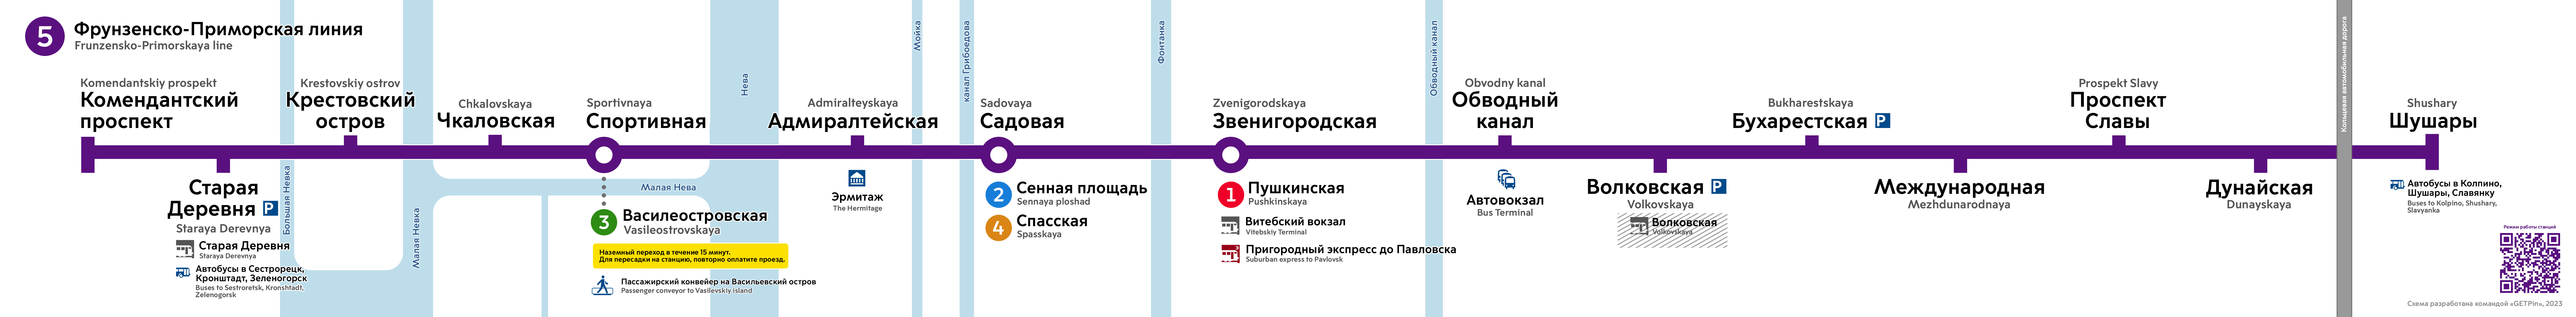 Санкт Петербург — Метрополитен — Схемы